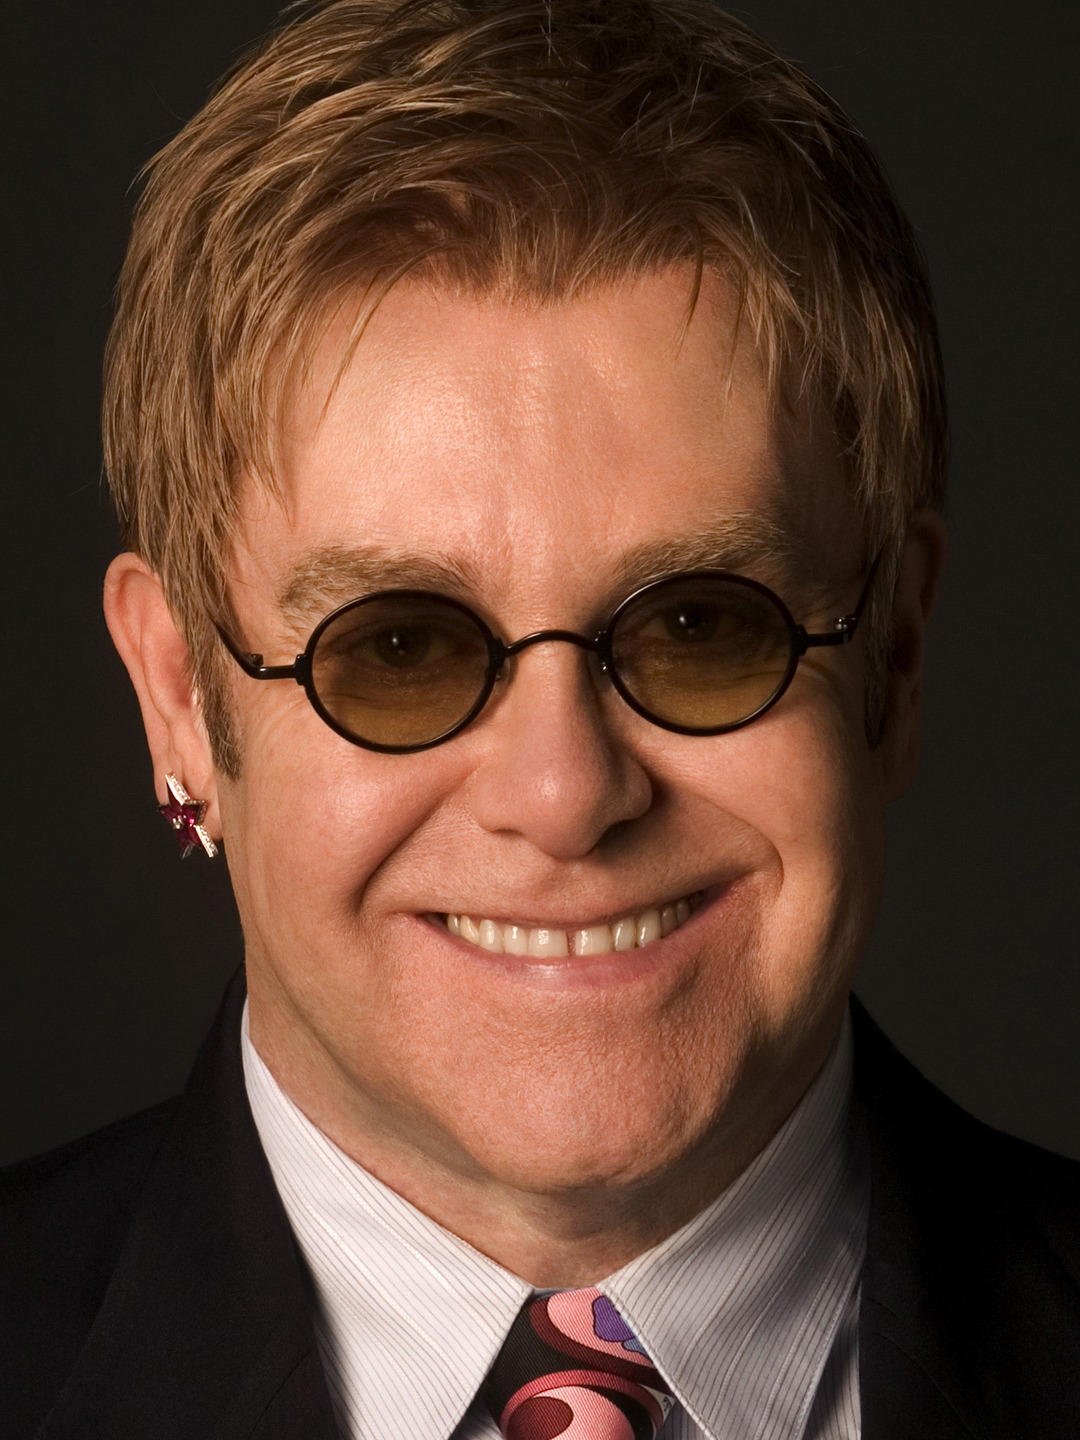 Elton John dating history